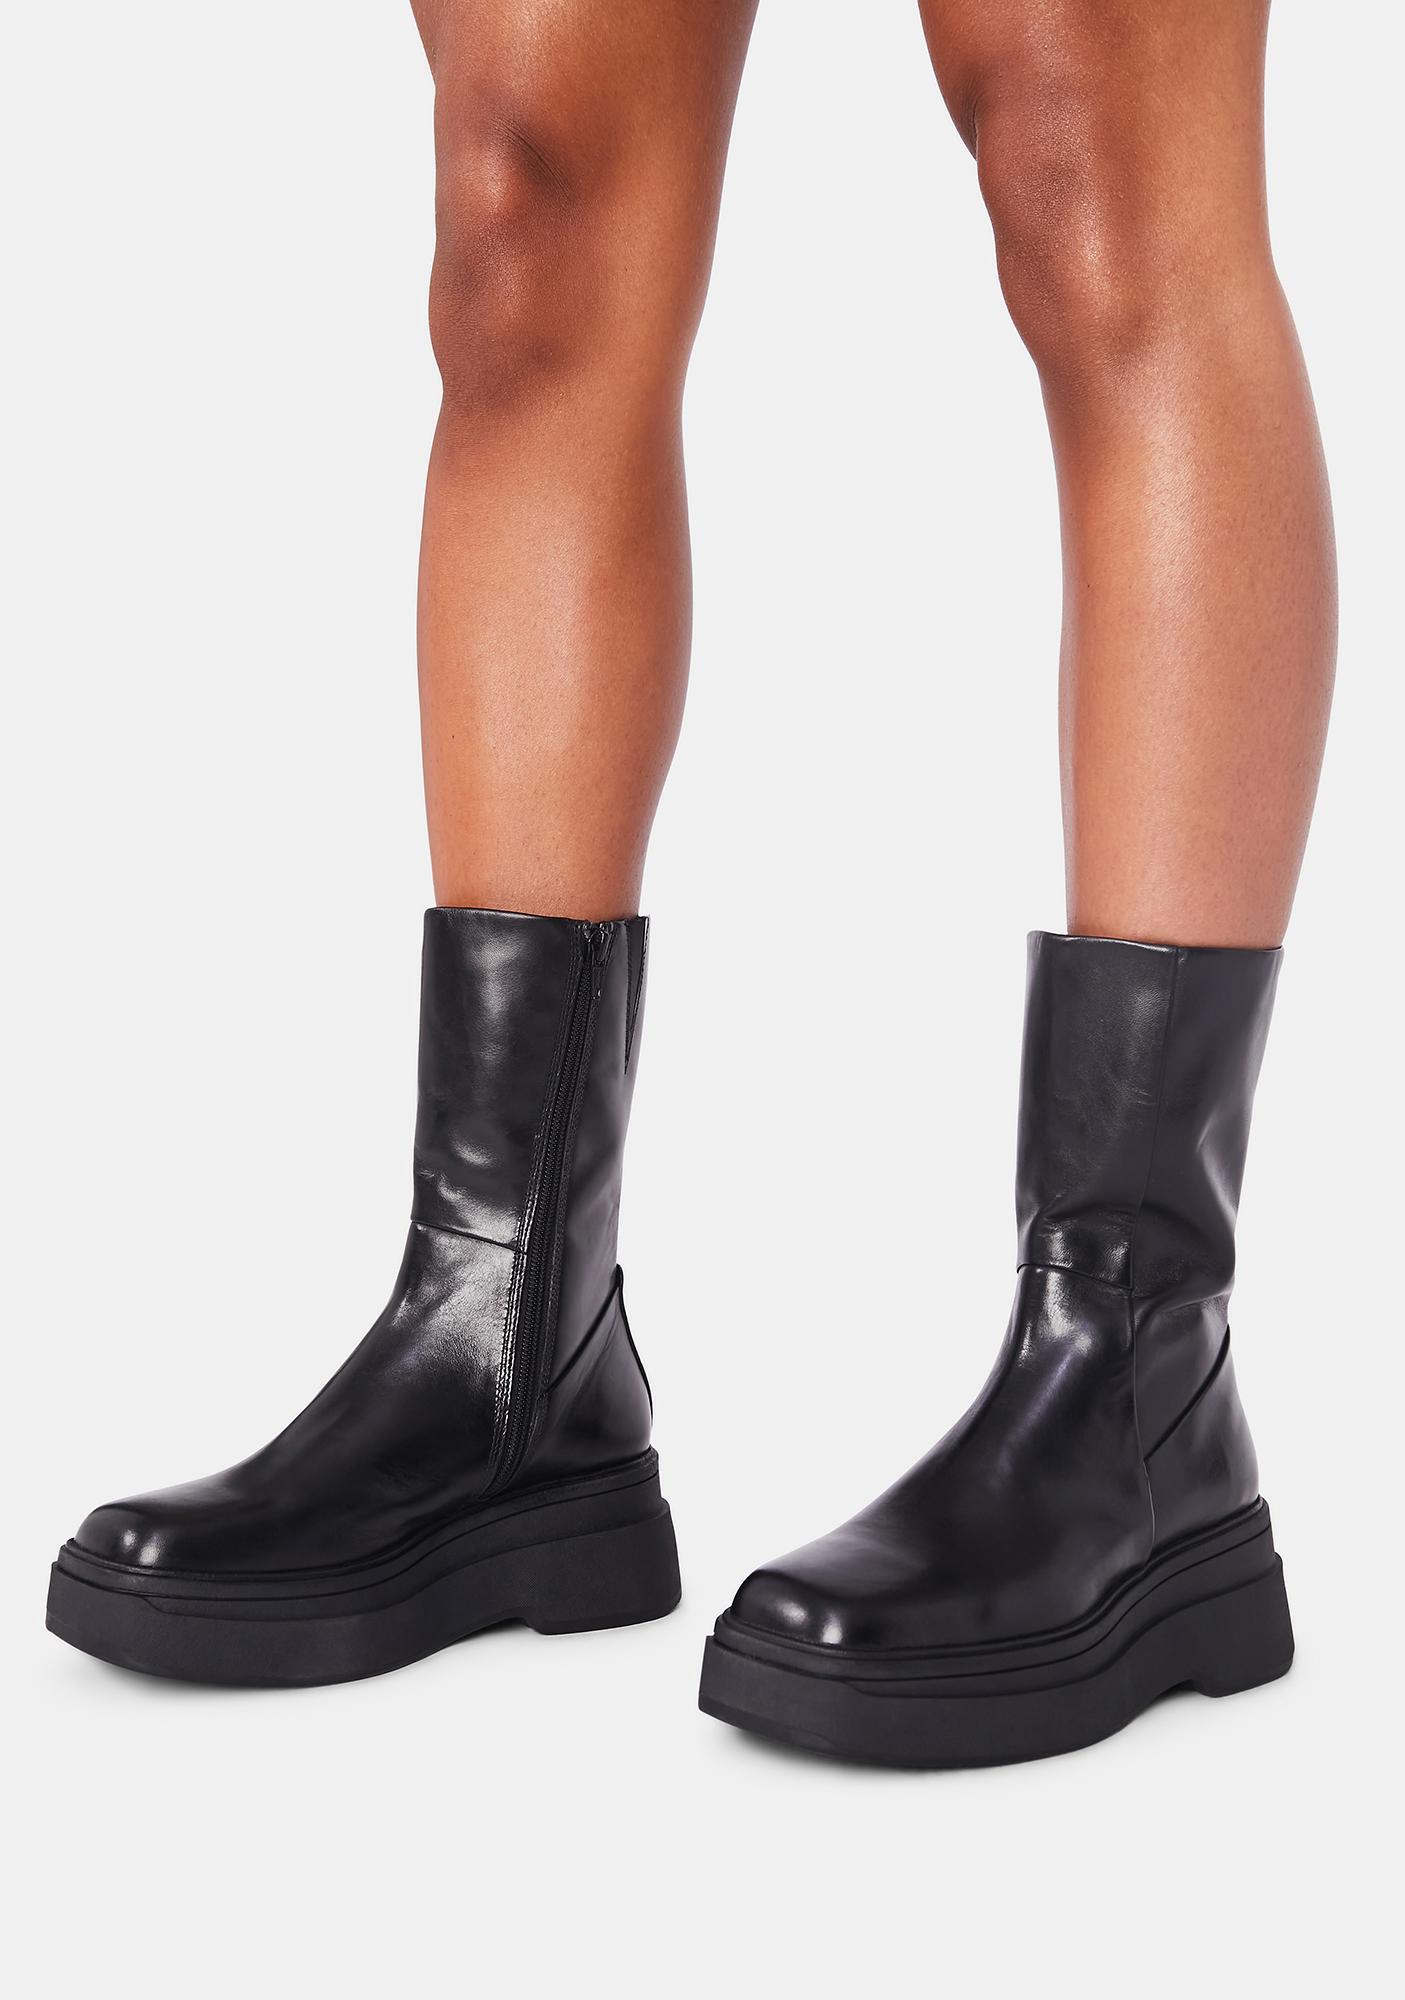 vagabond thigh high boots